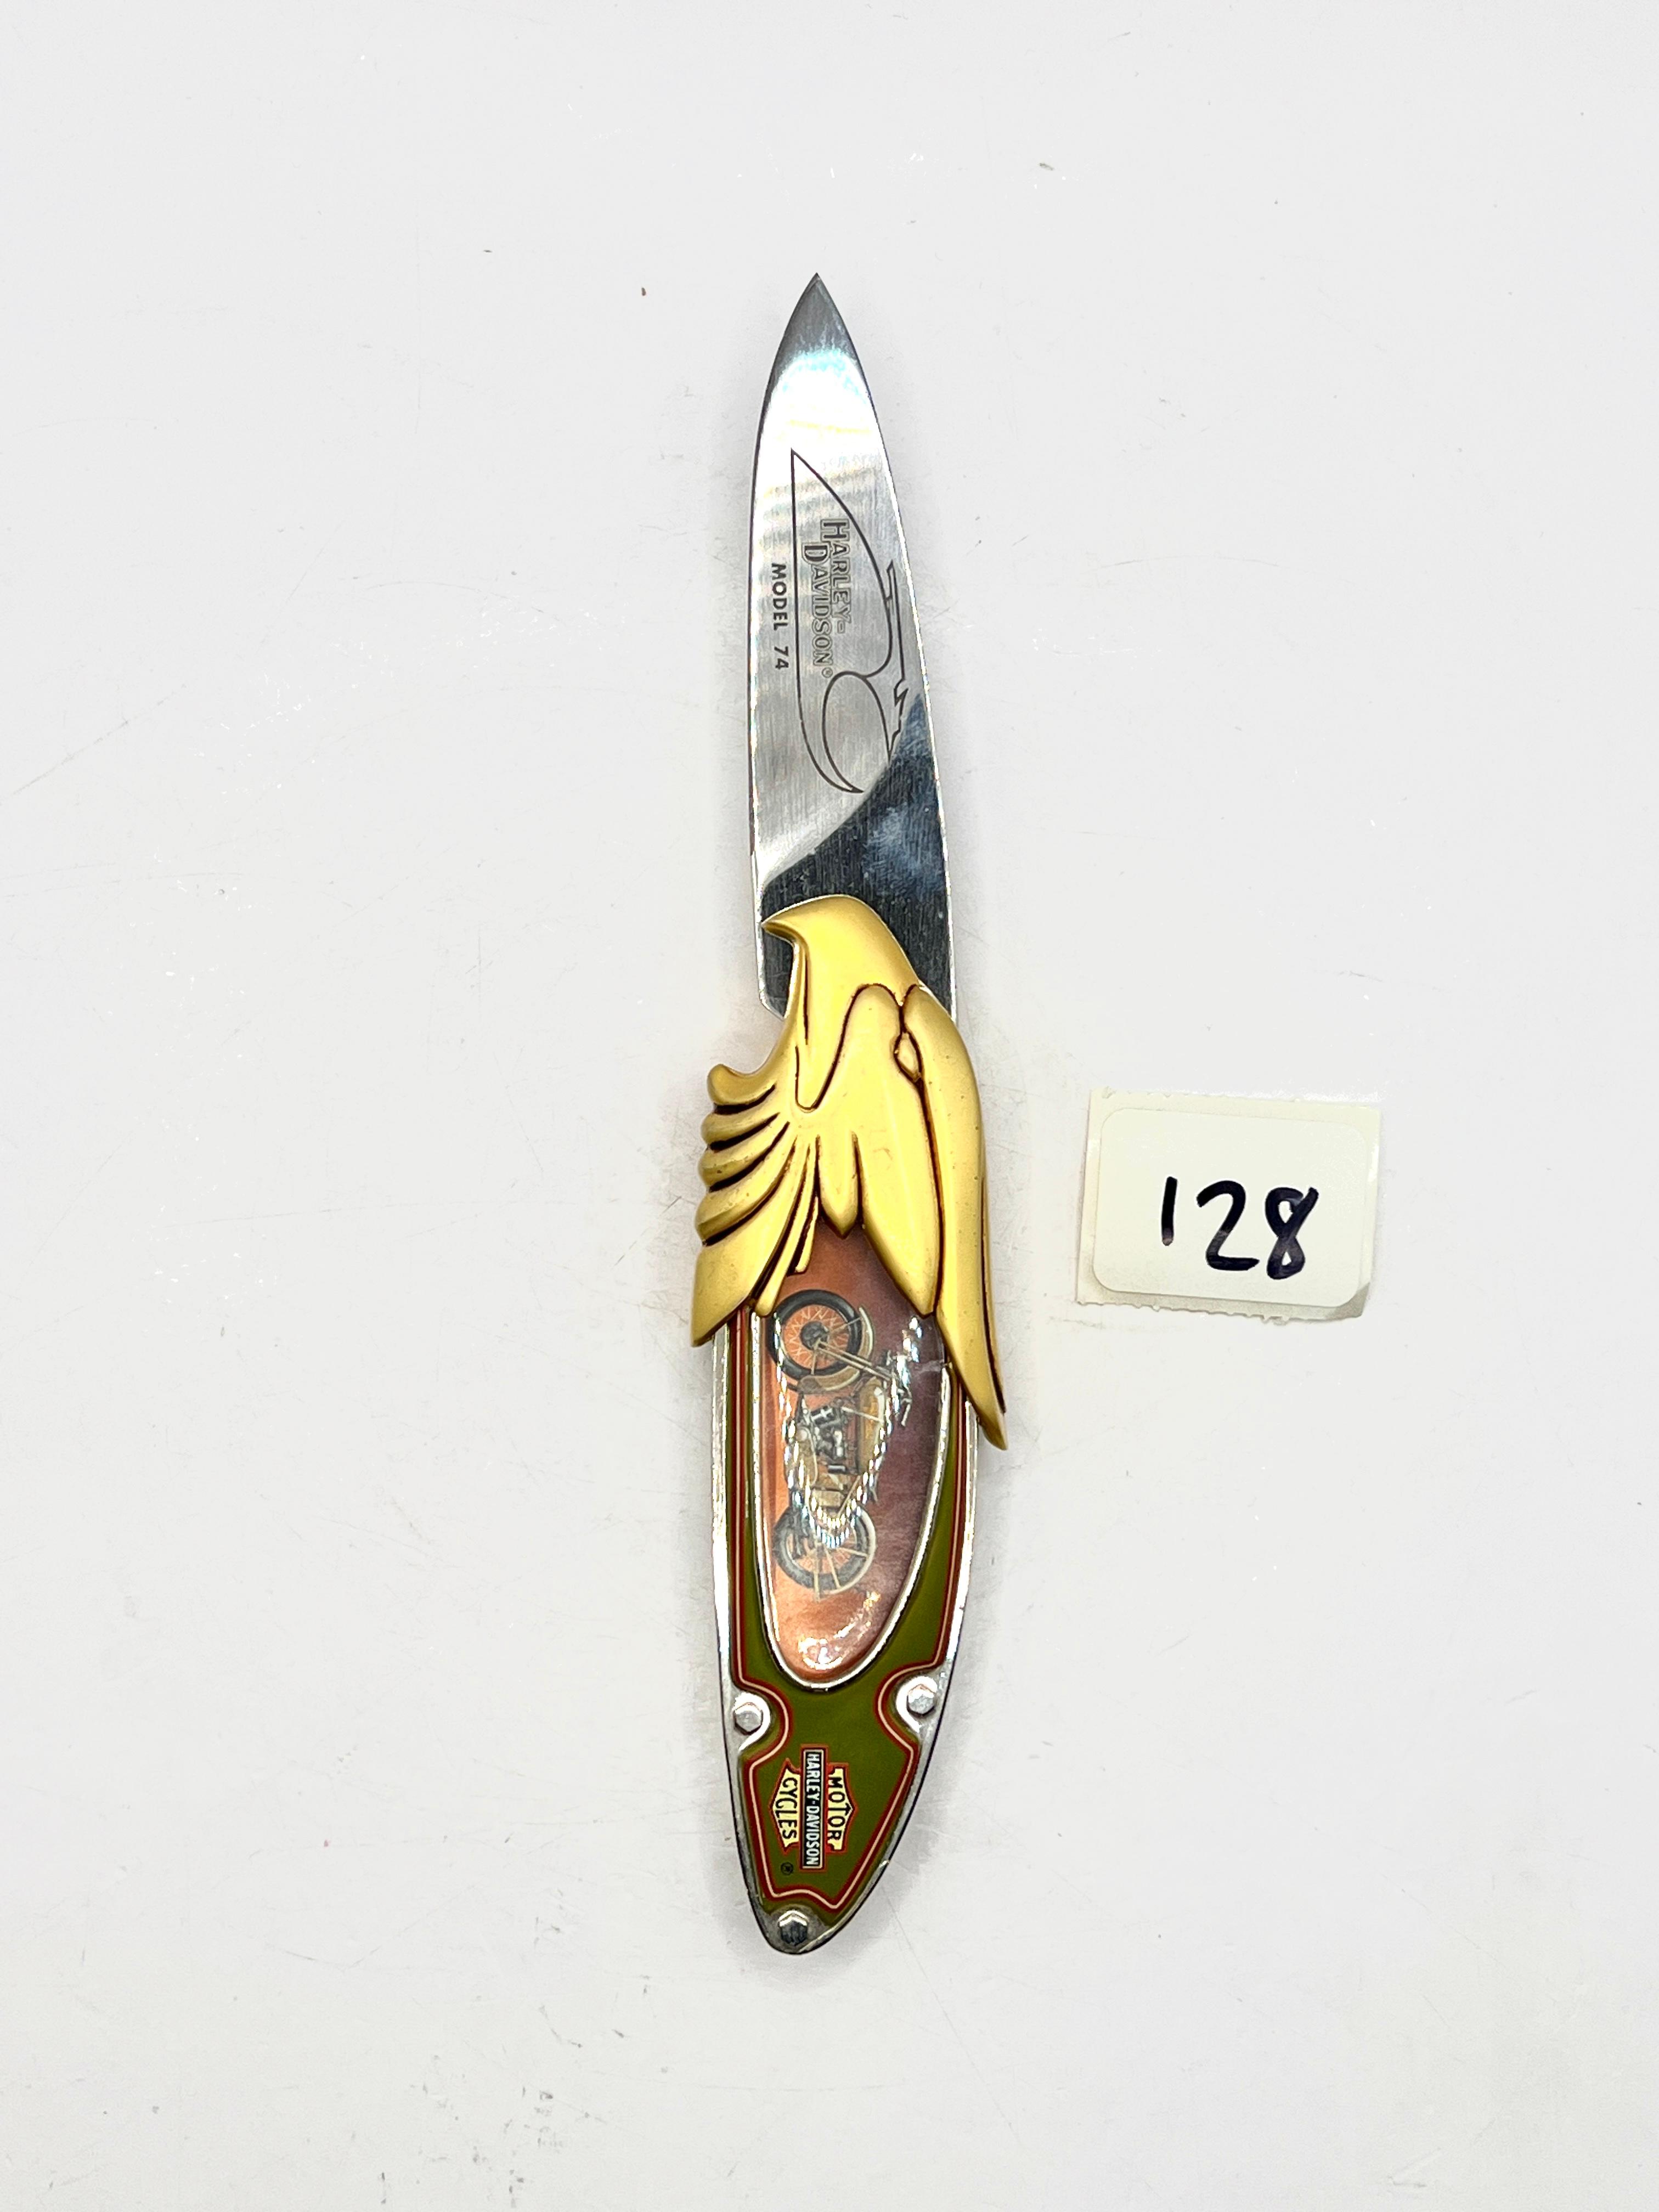 Harley Davidson pocket knife